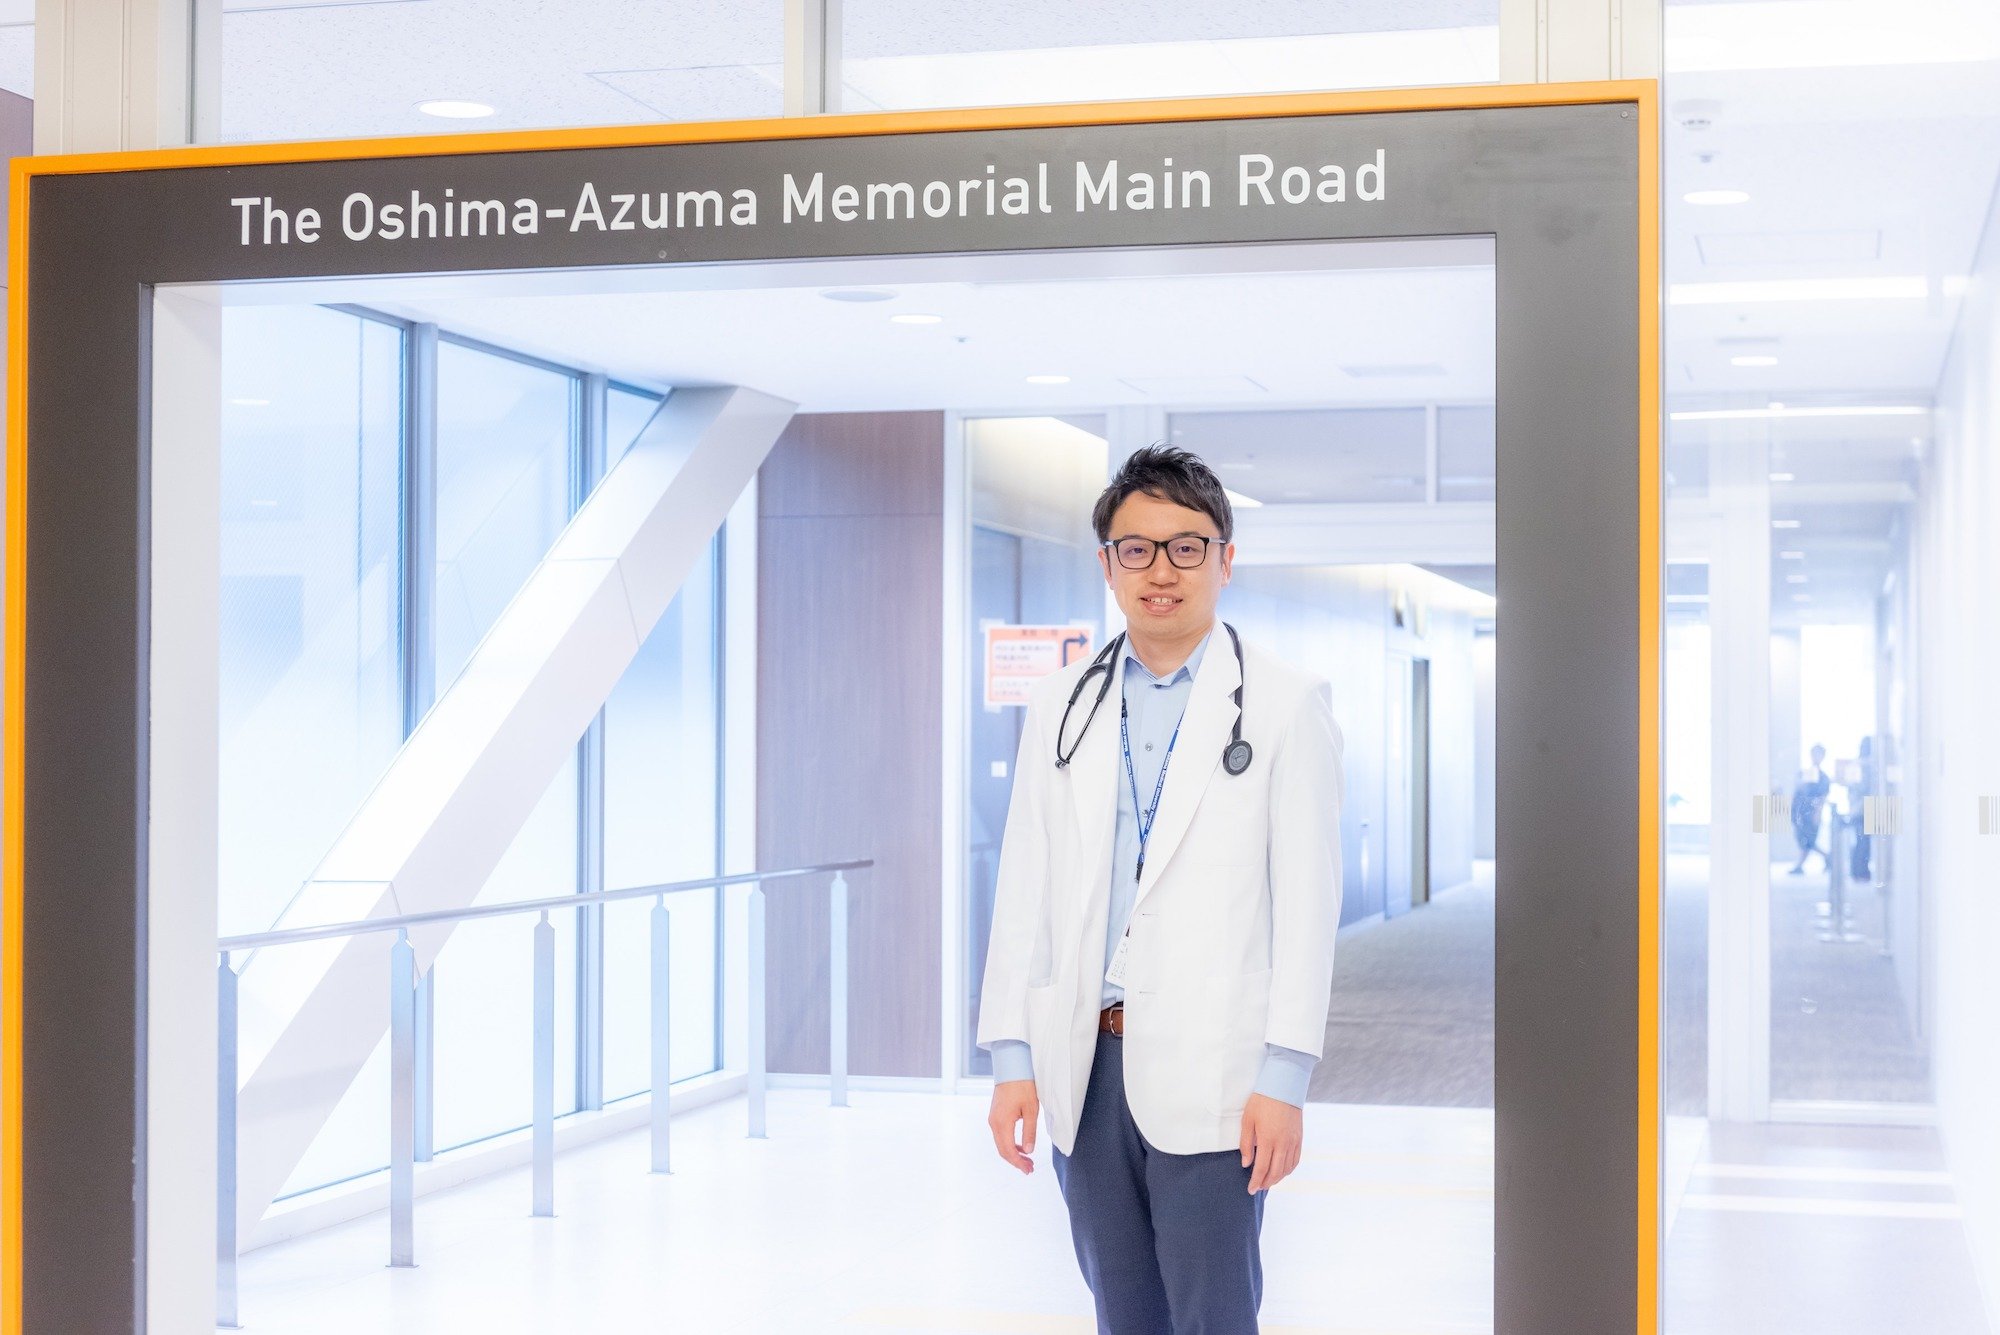 LINEのボットを活用して新型コロナウイルスワクチン接種に関するQ&Aサイトを立ち上げた山田悠史氏。現在ニューヨークの大学病院で勤務する現役の医師だ